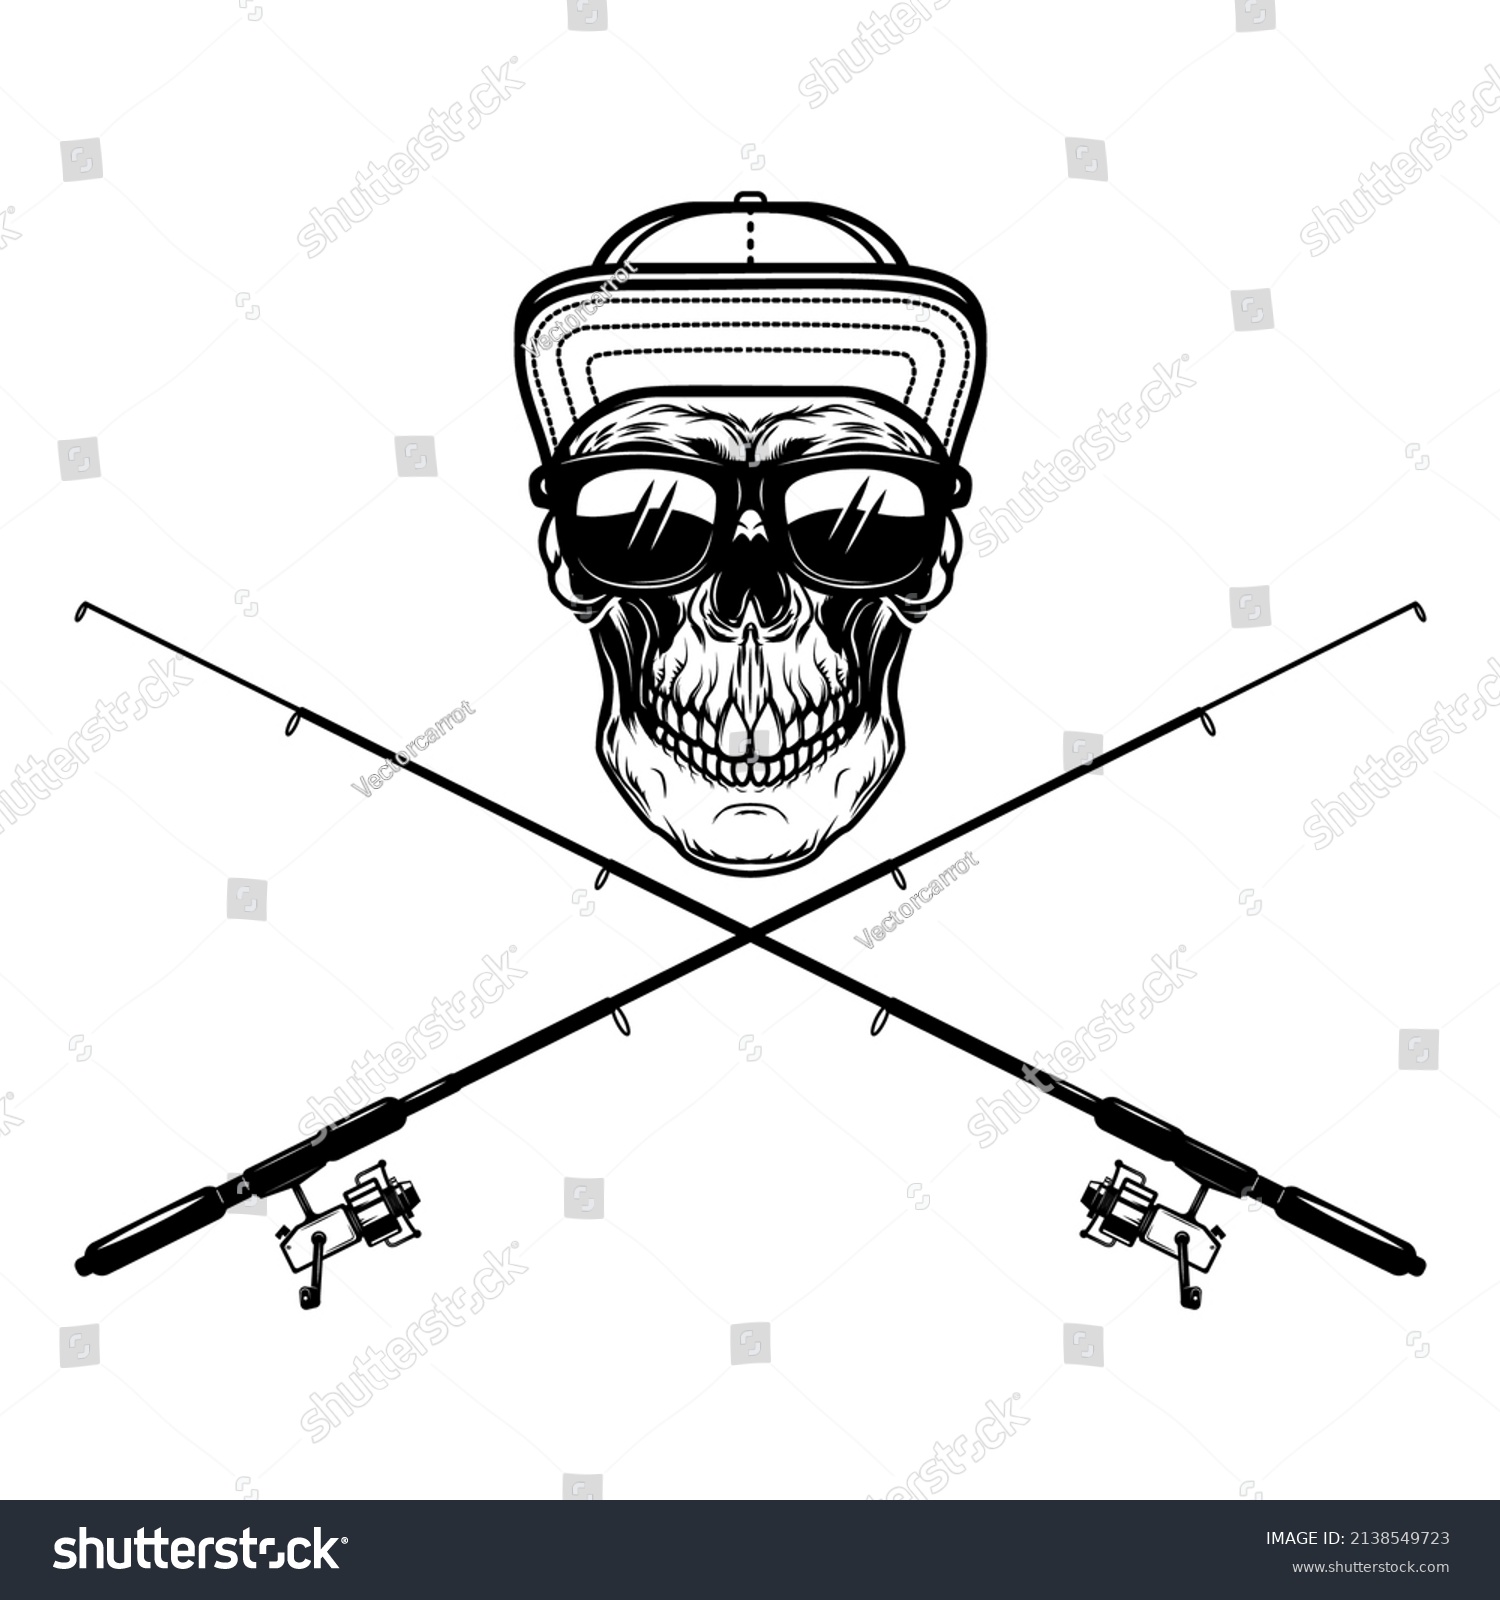 SVG of Fisherman skull with crossed fishing rods. Design element for logo, emblem, sign, poster, t shirt. Vector illustration svg